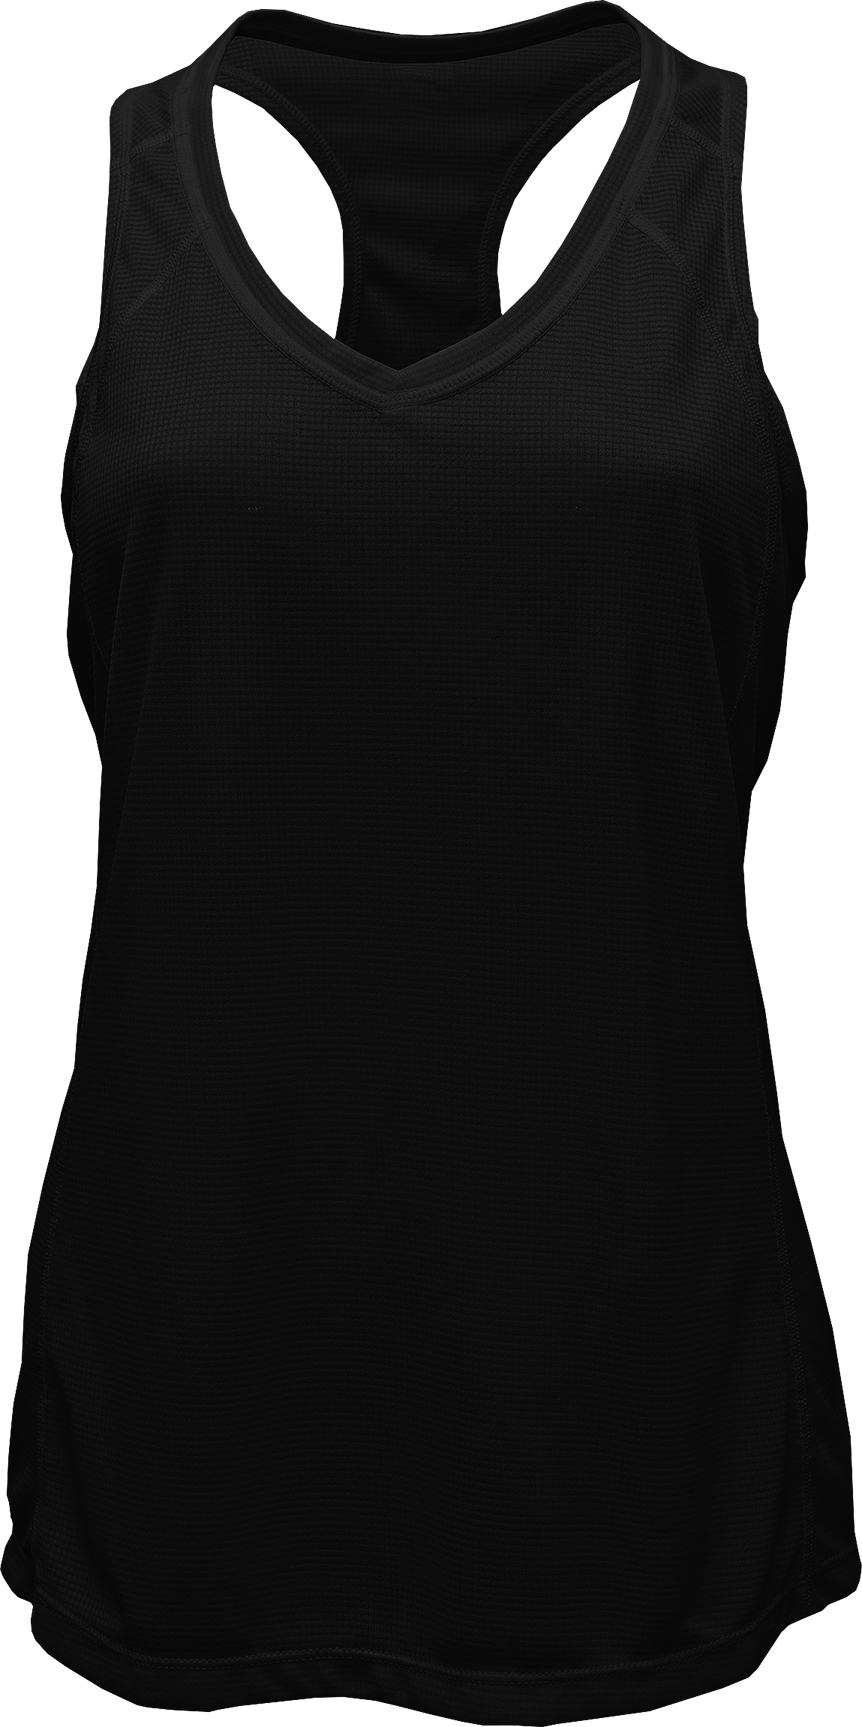 BAW Athletic Wear GS821 - Ladies Grid Singlet